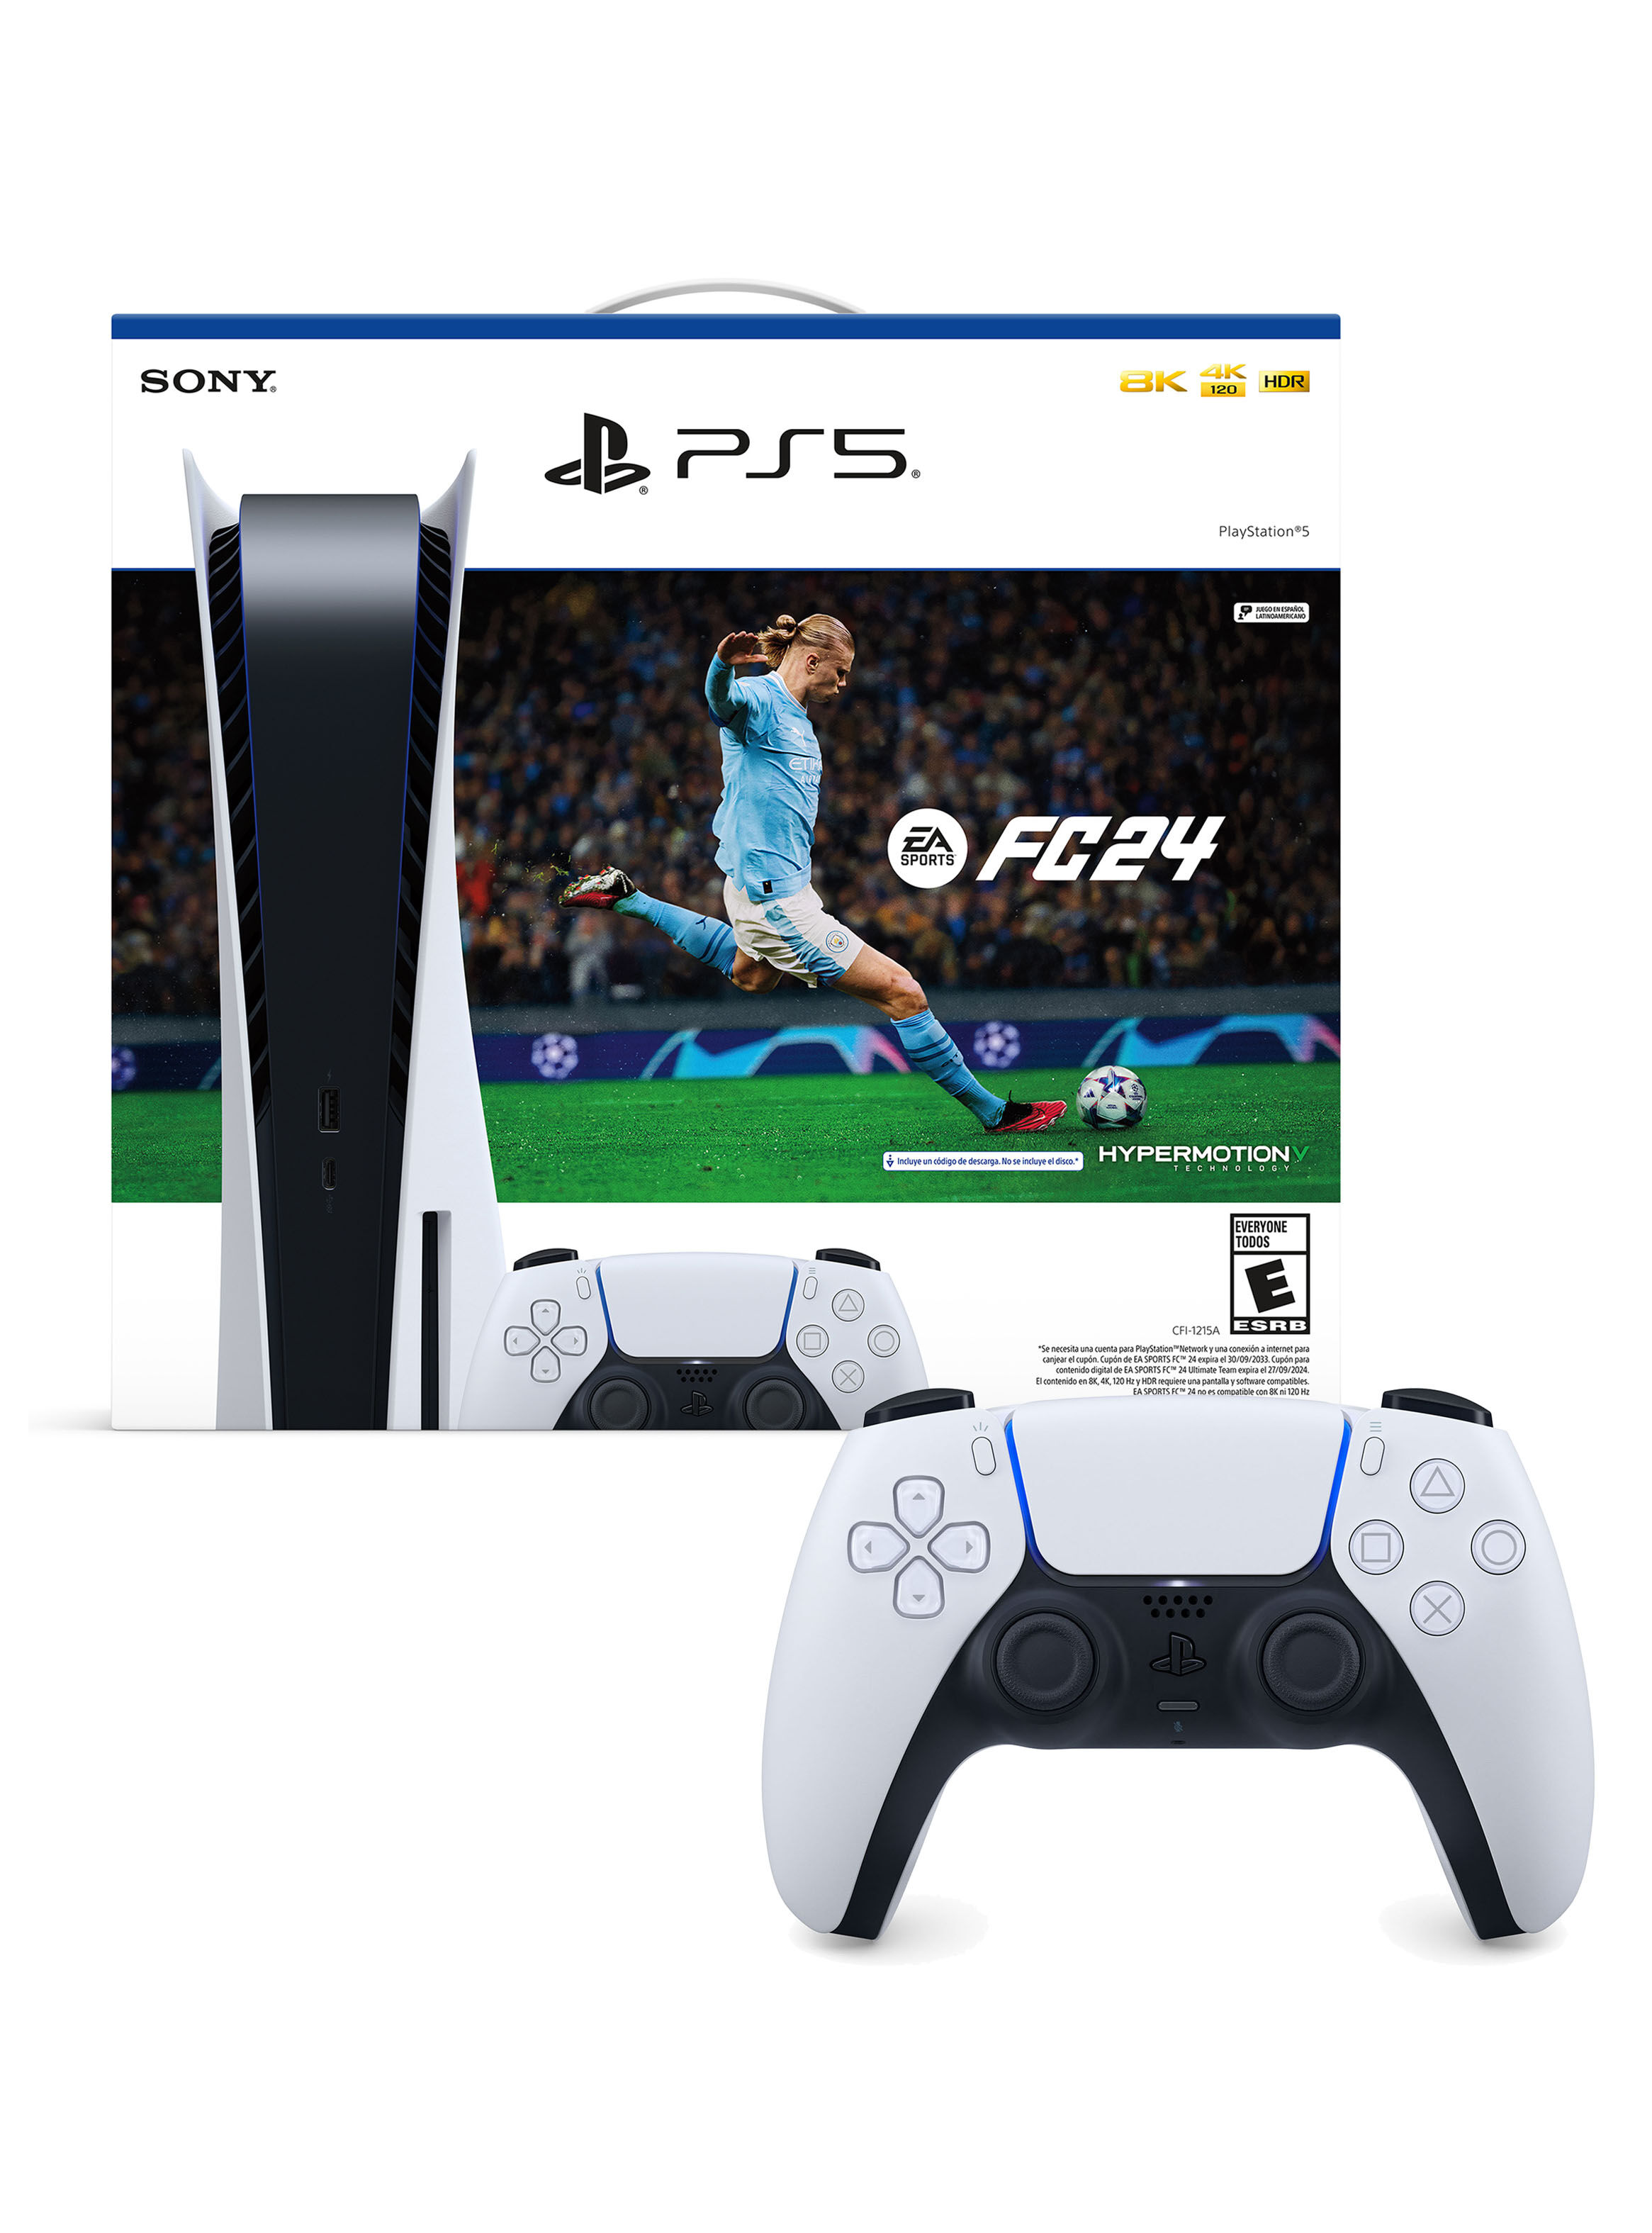 Dualsense Blanco PlayStation 5 con EA FC 24